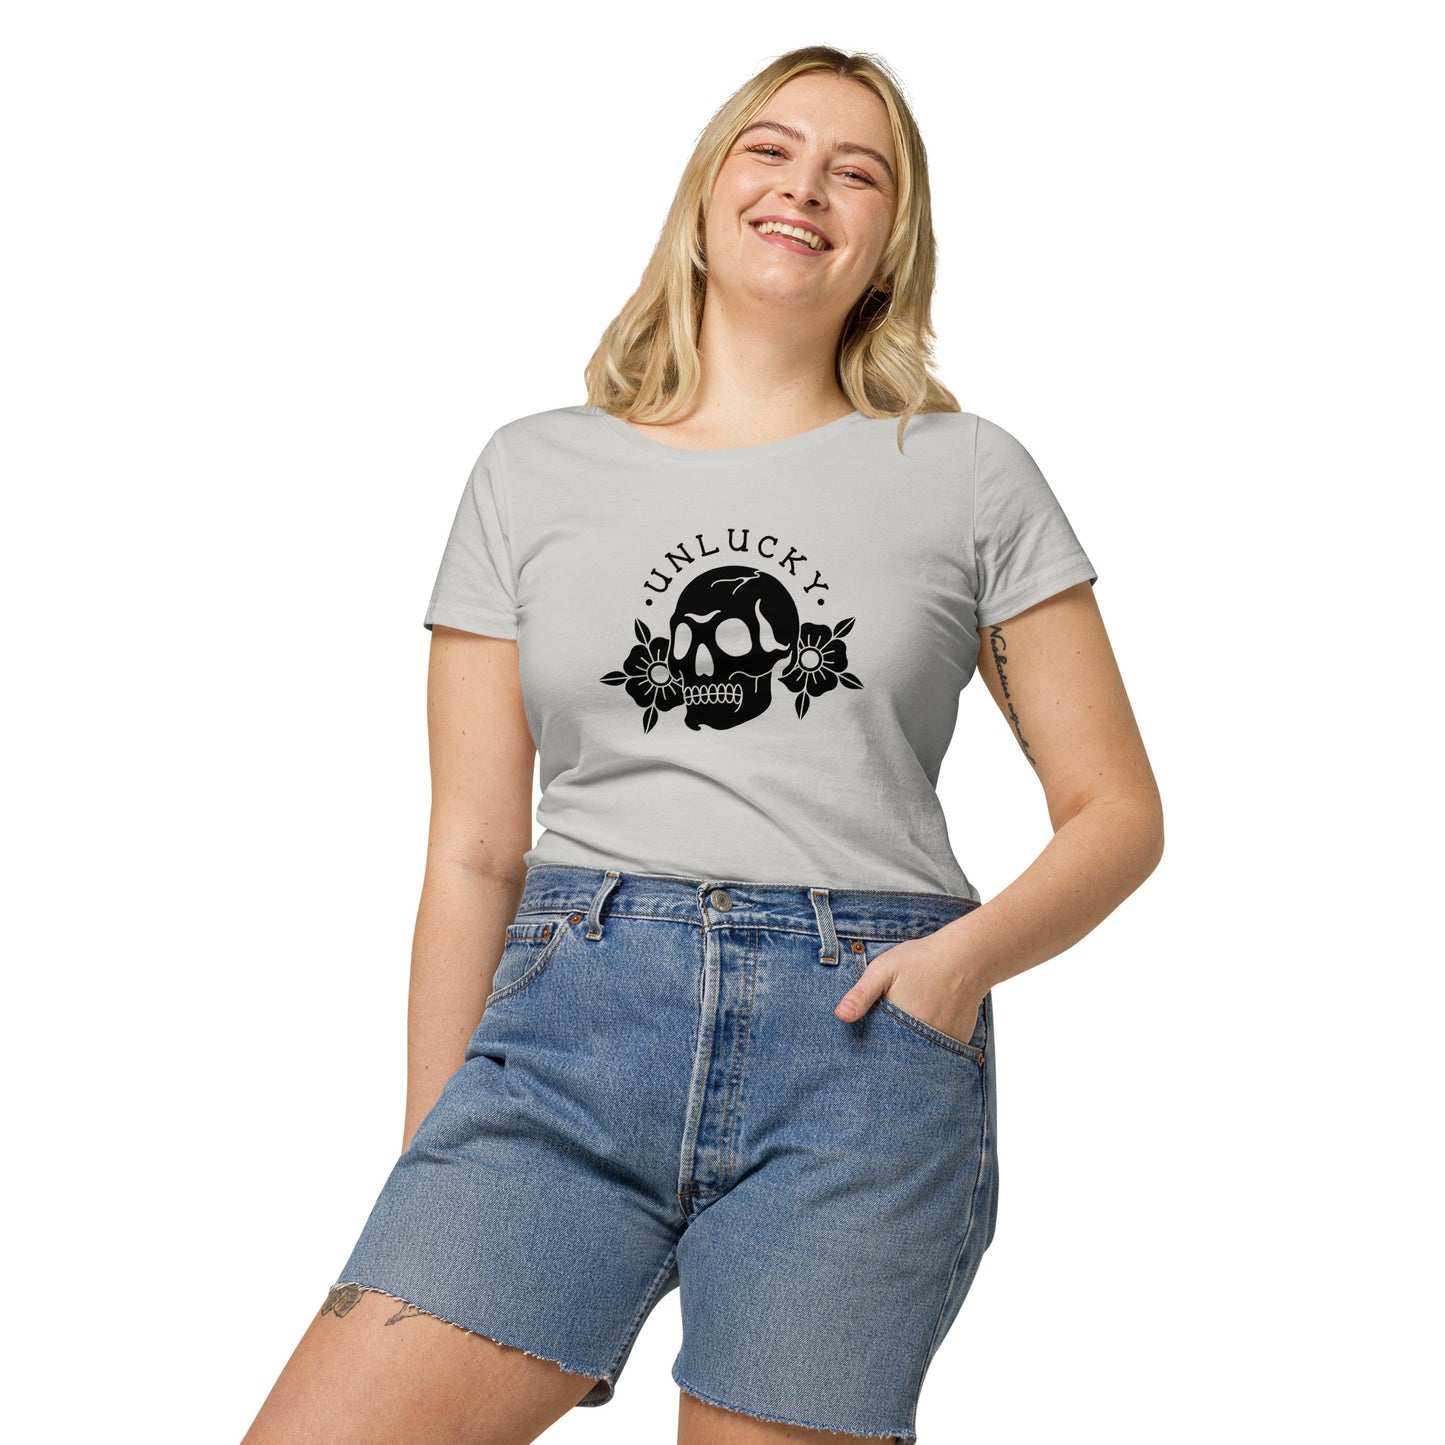 Women's t-shirt "UNLUCKY"